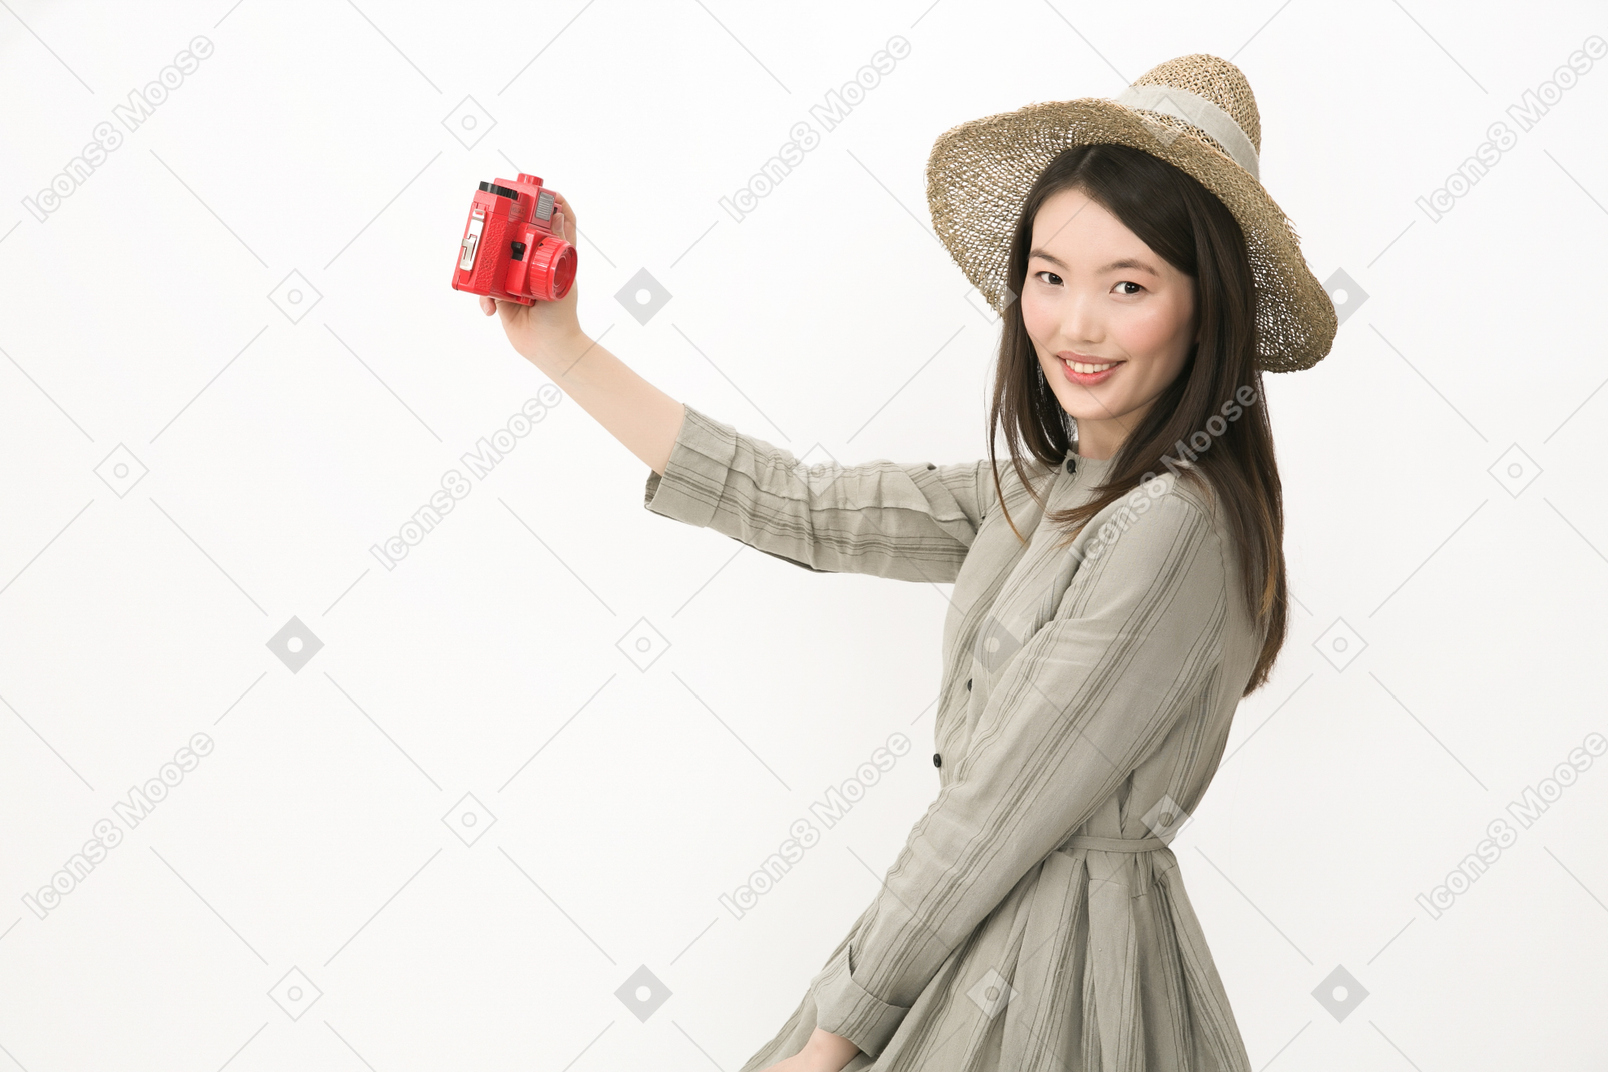 Gir in hut im profil stehen und ein selfie mit roten kamera machen